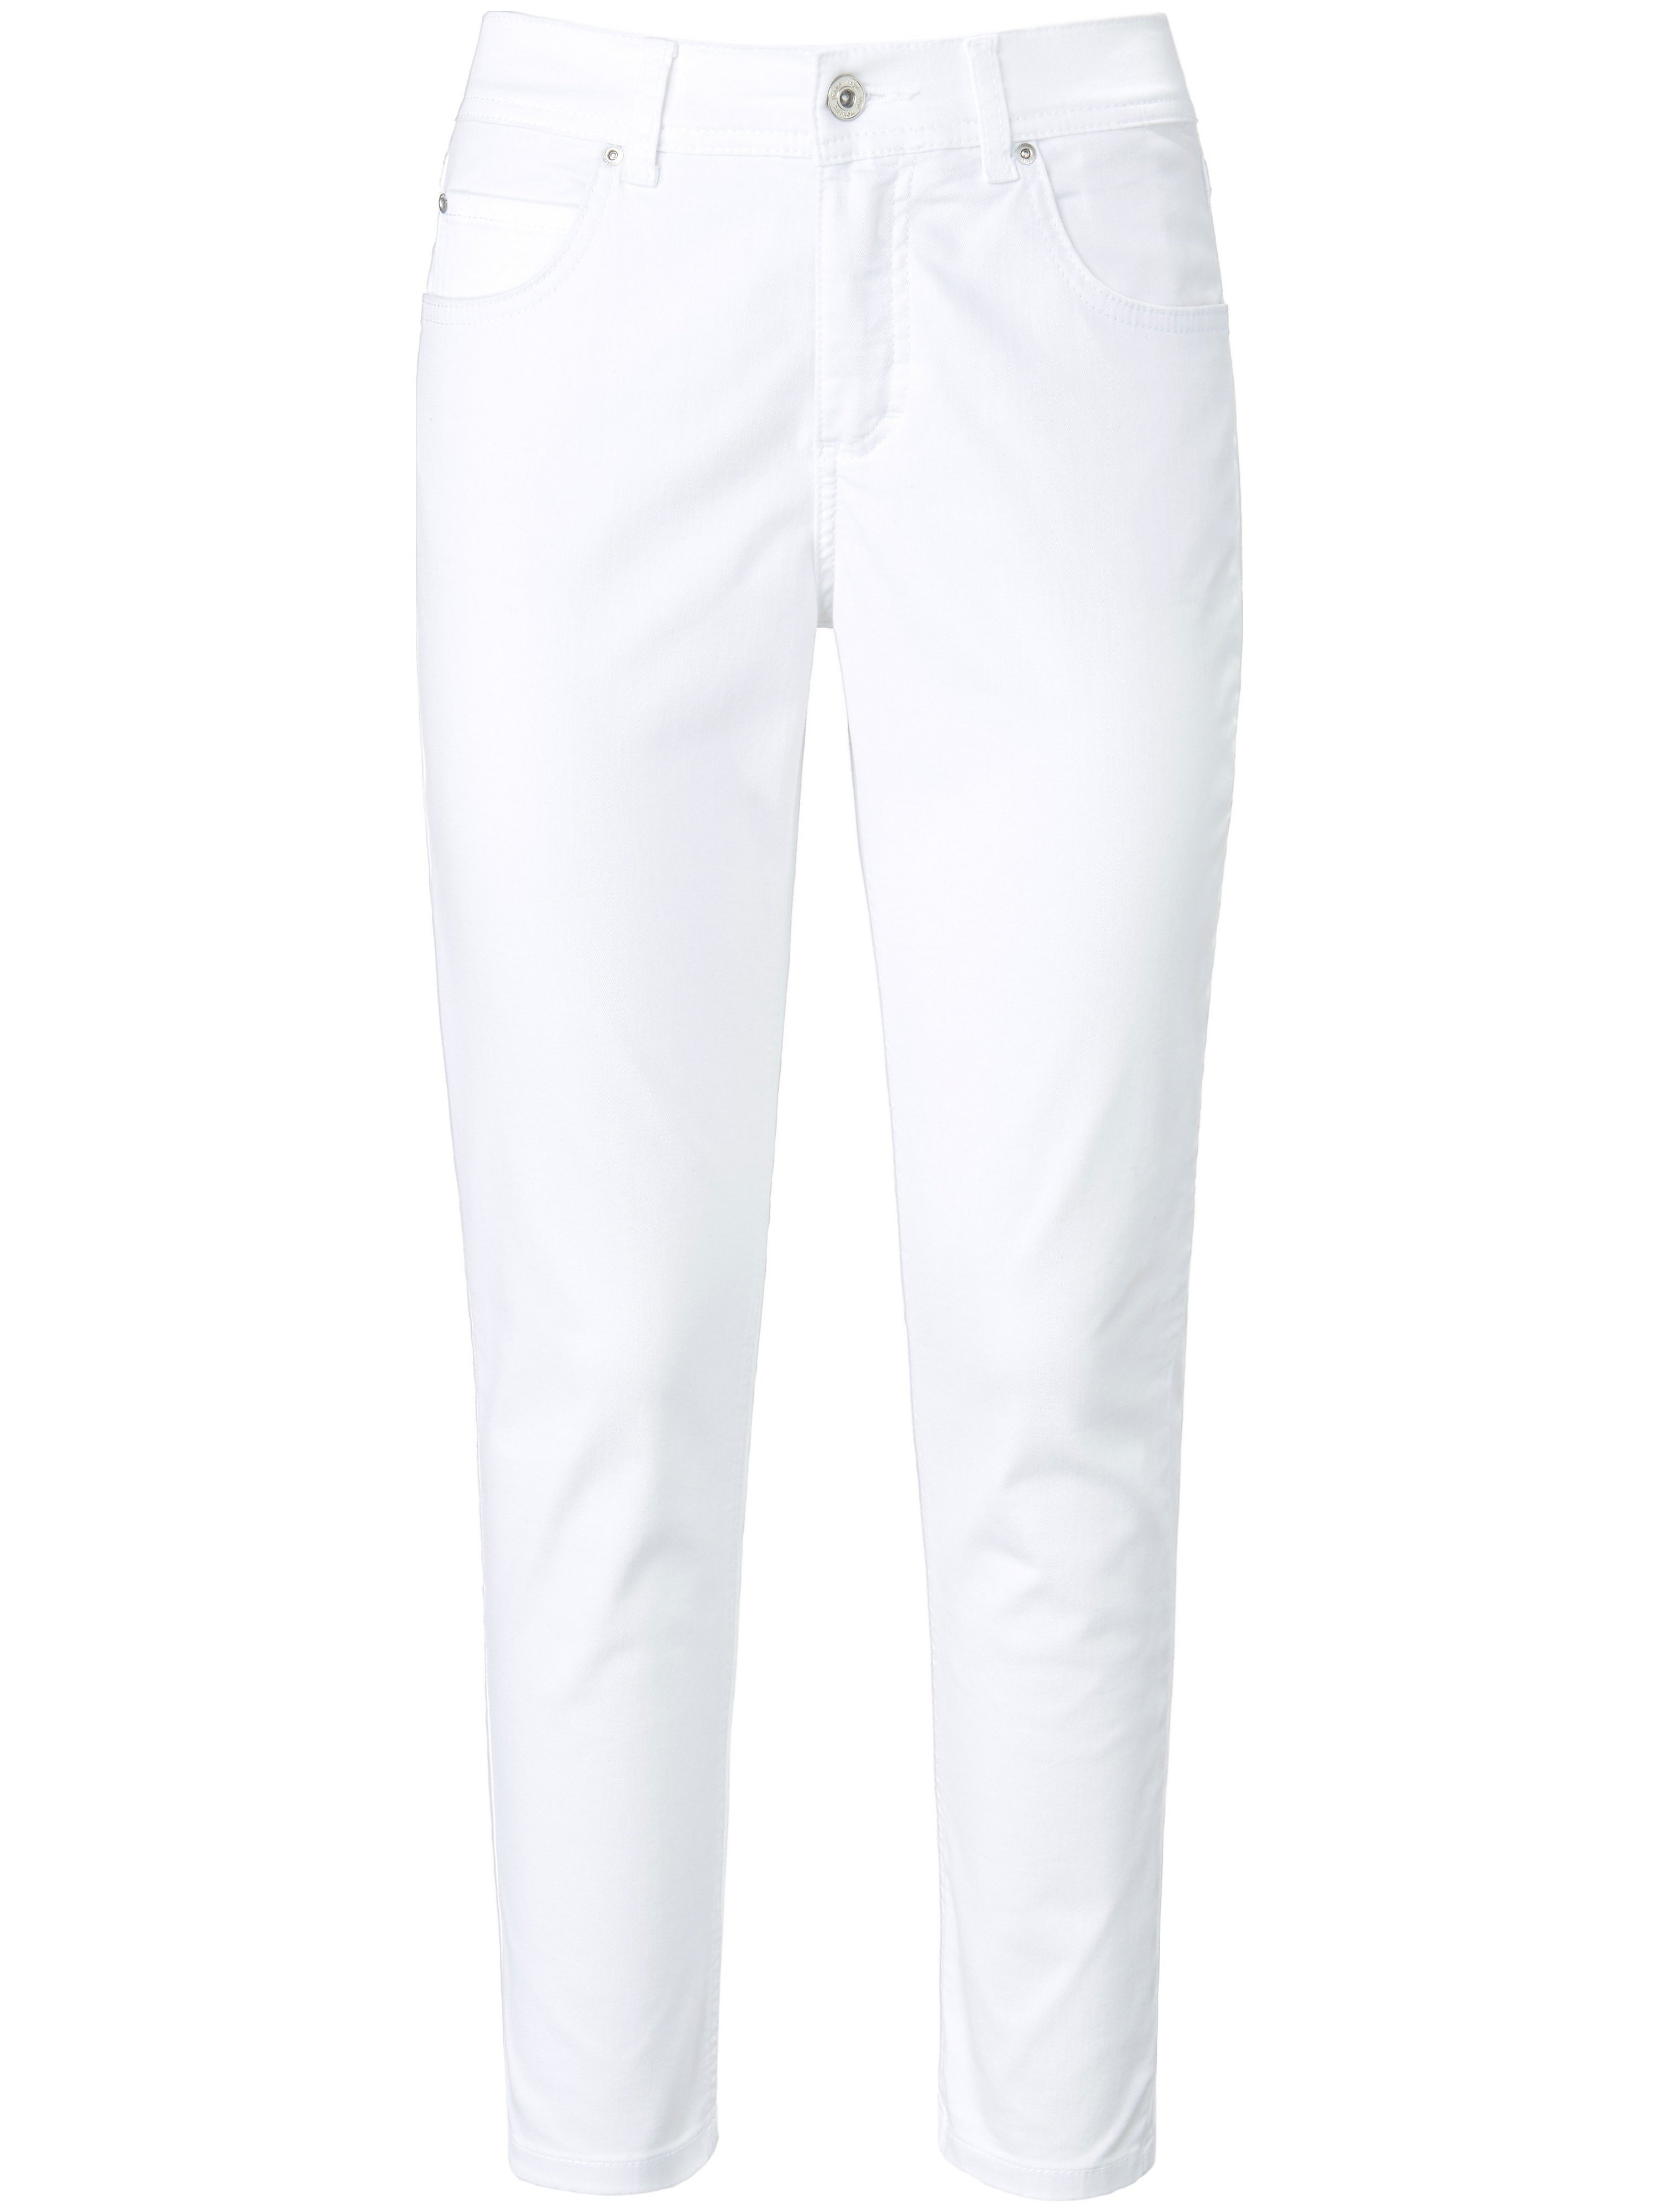 Le jean modèle Ornella  ANGELS blanc taille 48